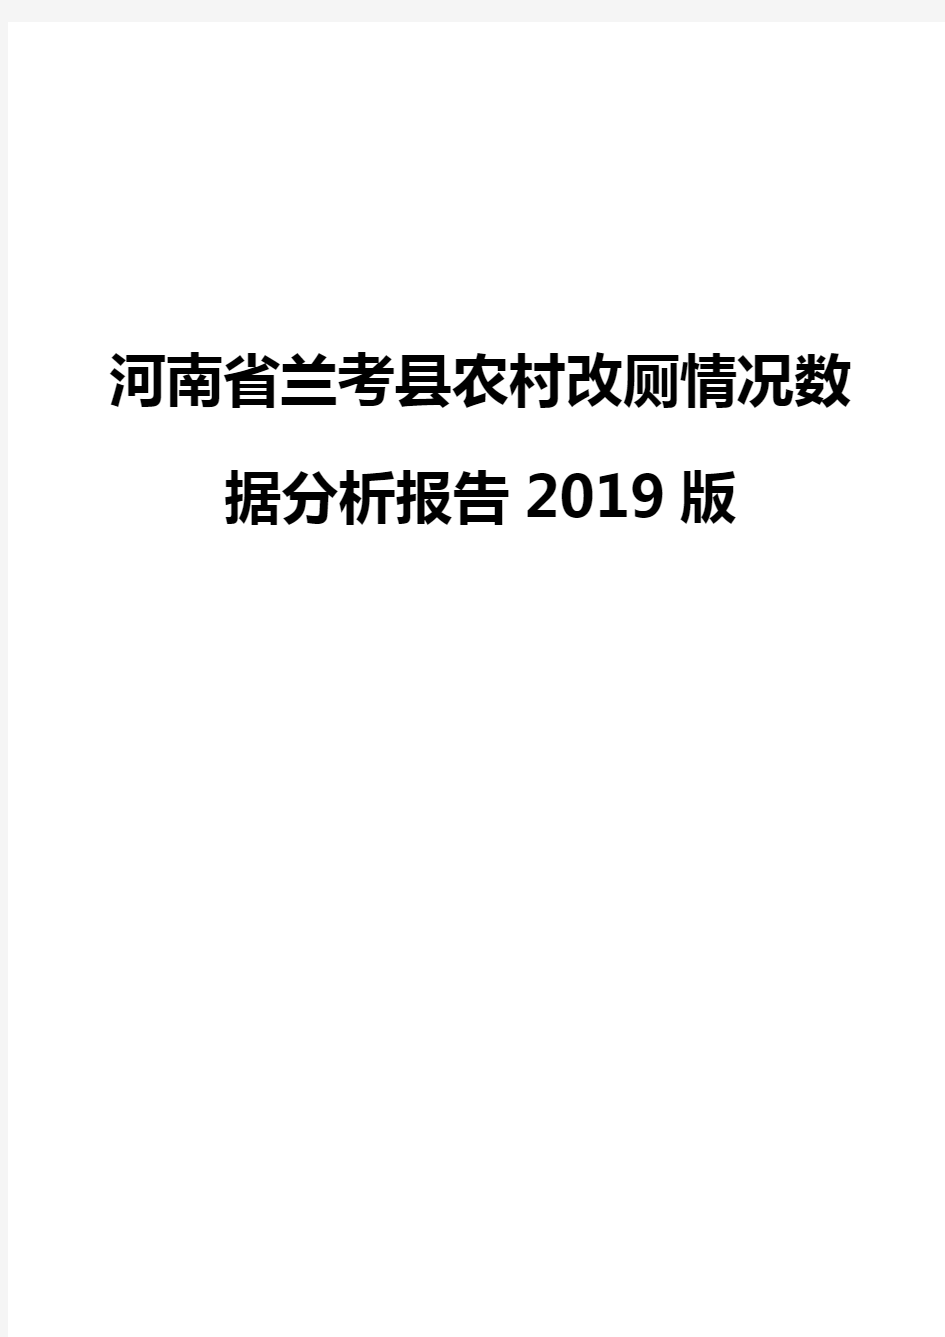 河南省兰考县农村改厕情况数据分析报告2019版